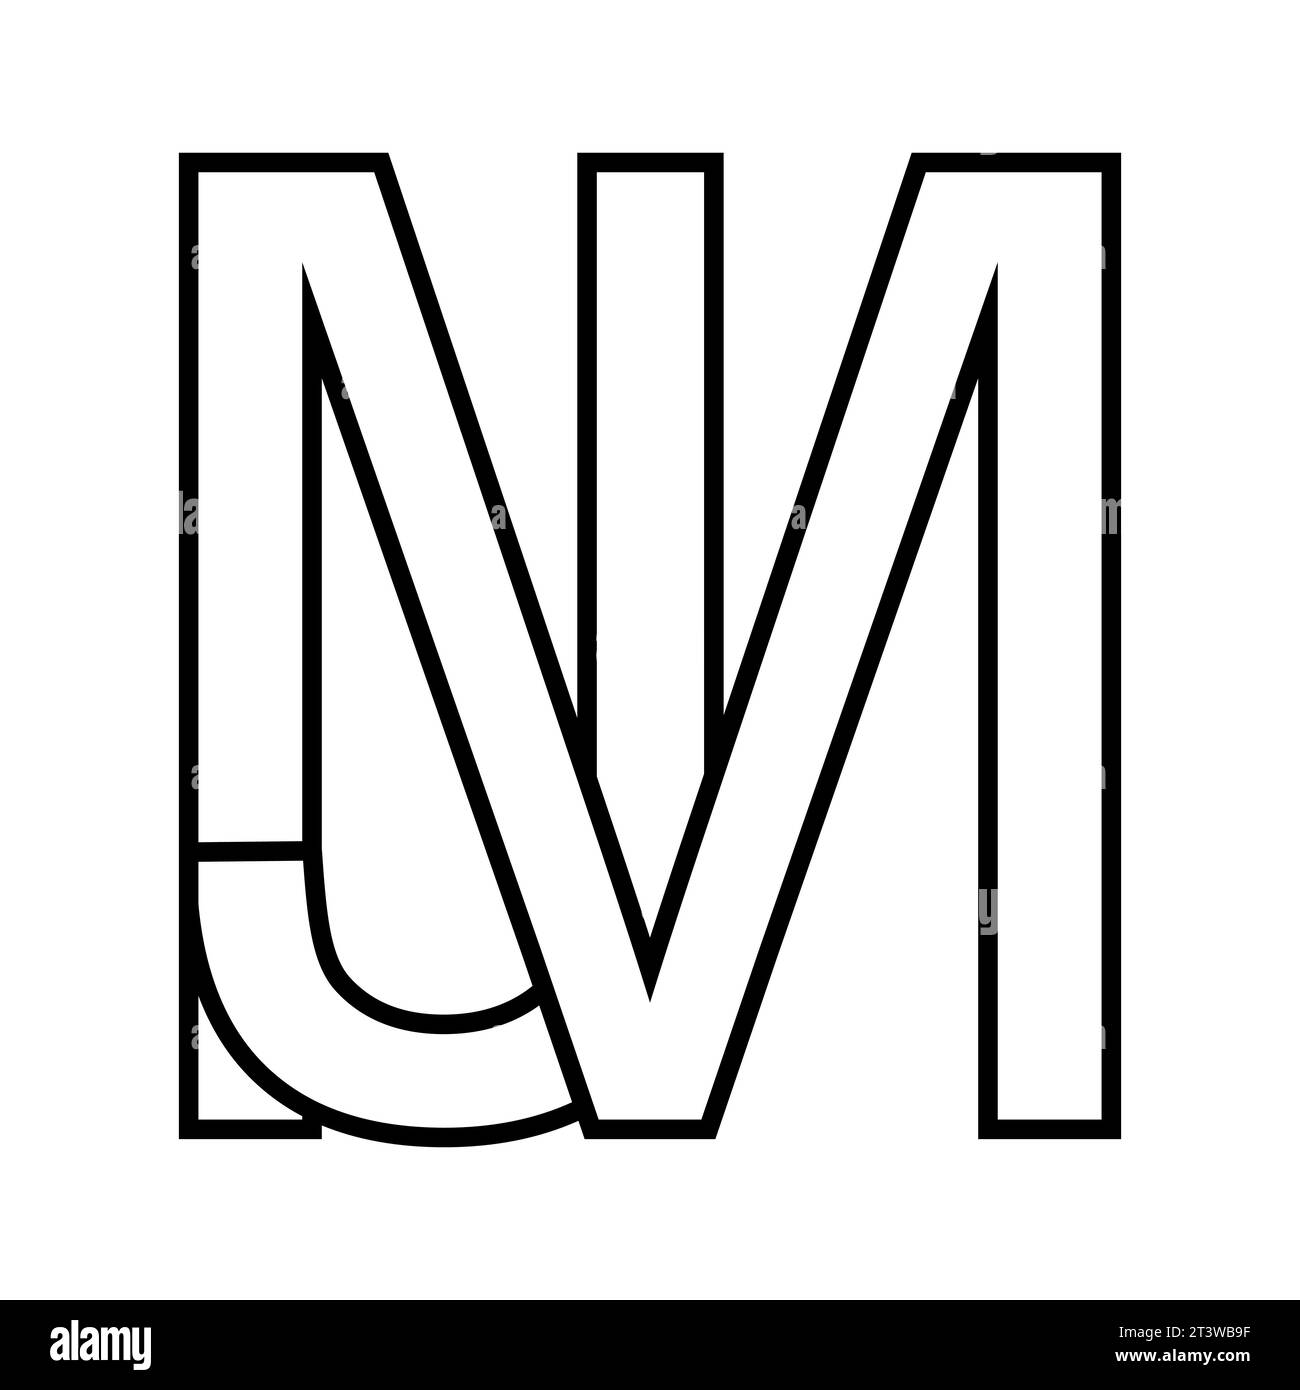 Logozeichen mj jm, Symbol Doppelbuchstaben Logotyp m j Stock Vektor